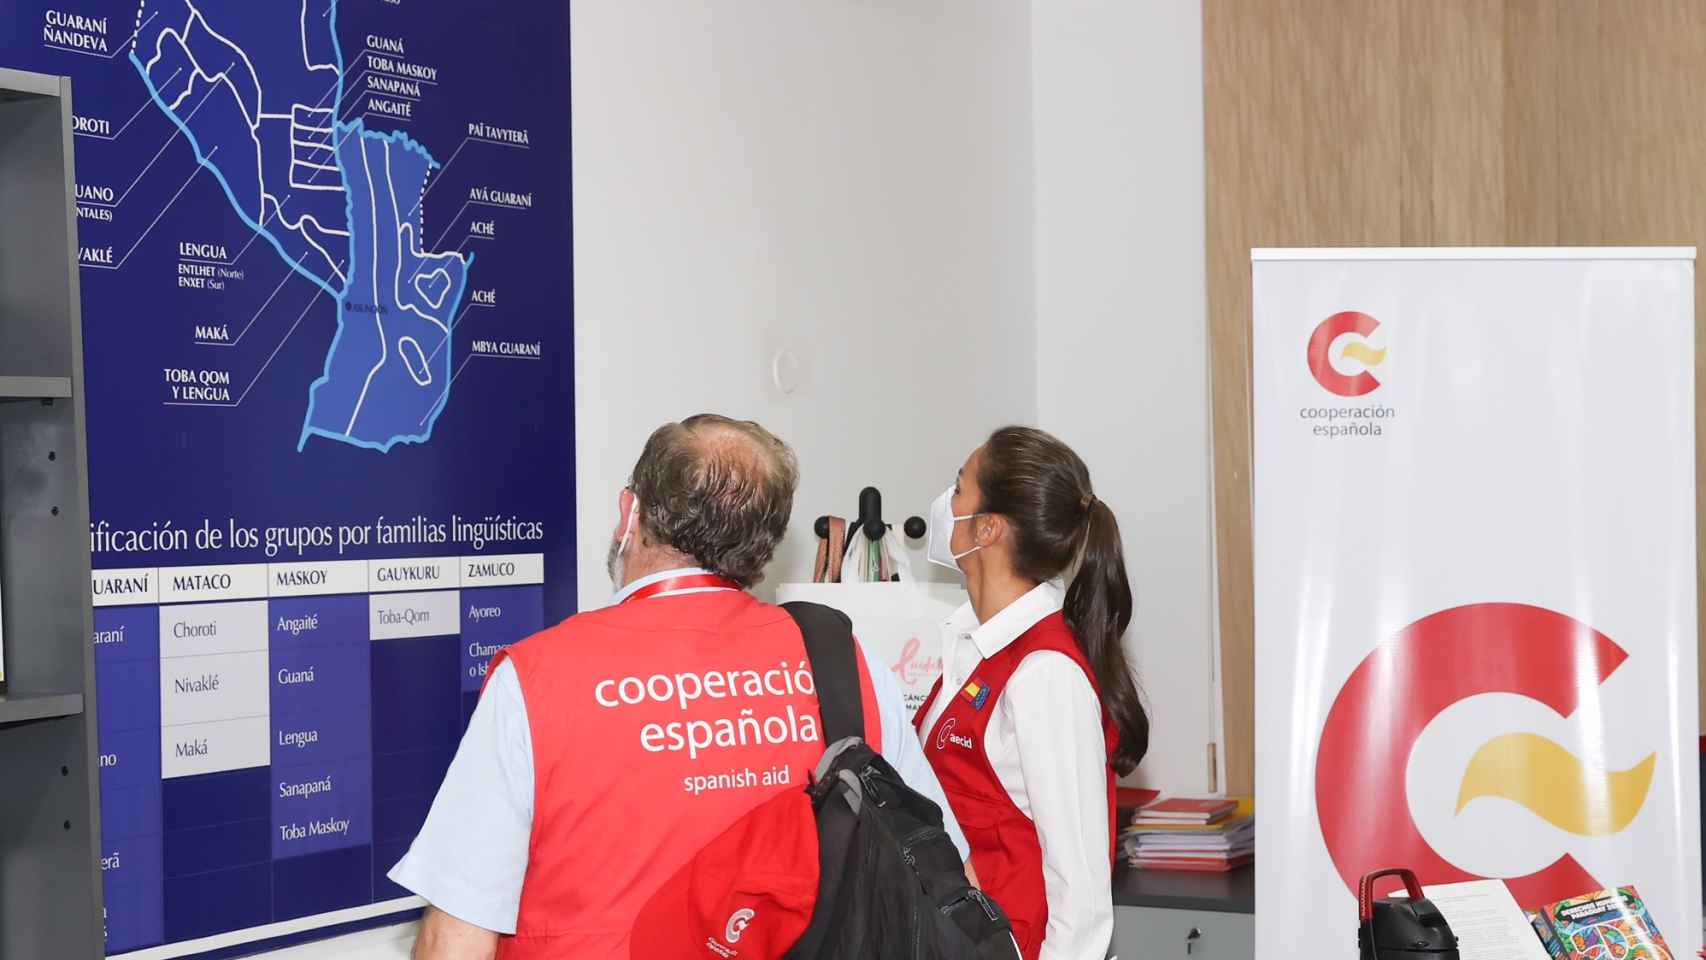 Letizia ha elogiado la labor y dedicación de los cooperantes españoles que trabajan en Paraguay.